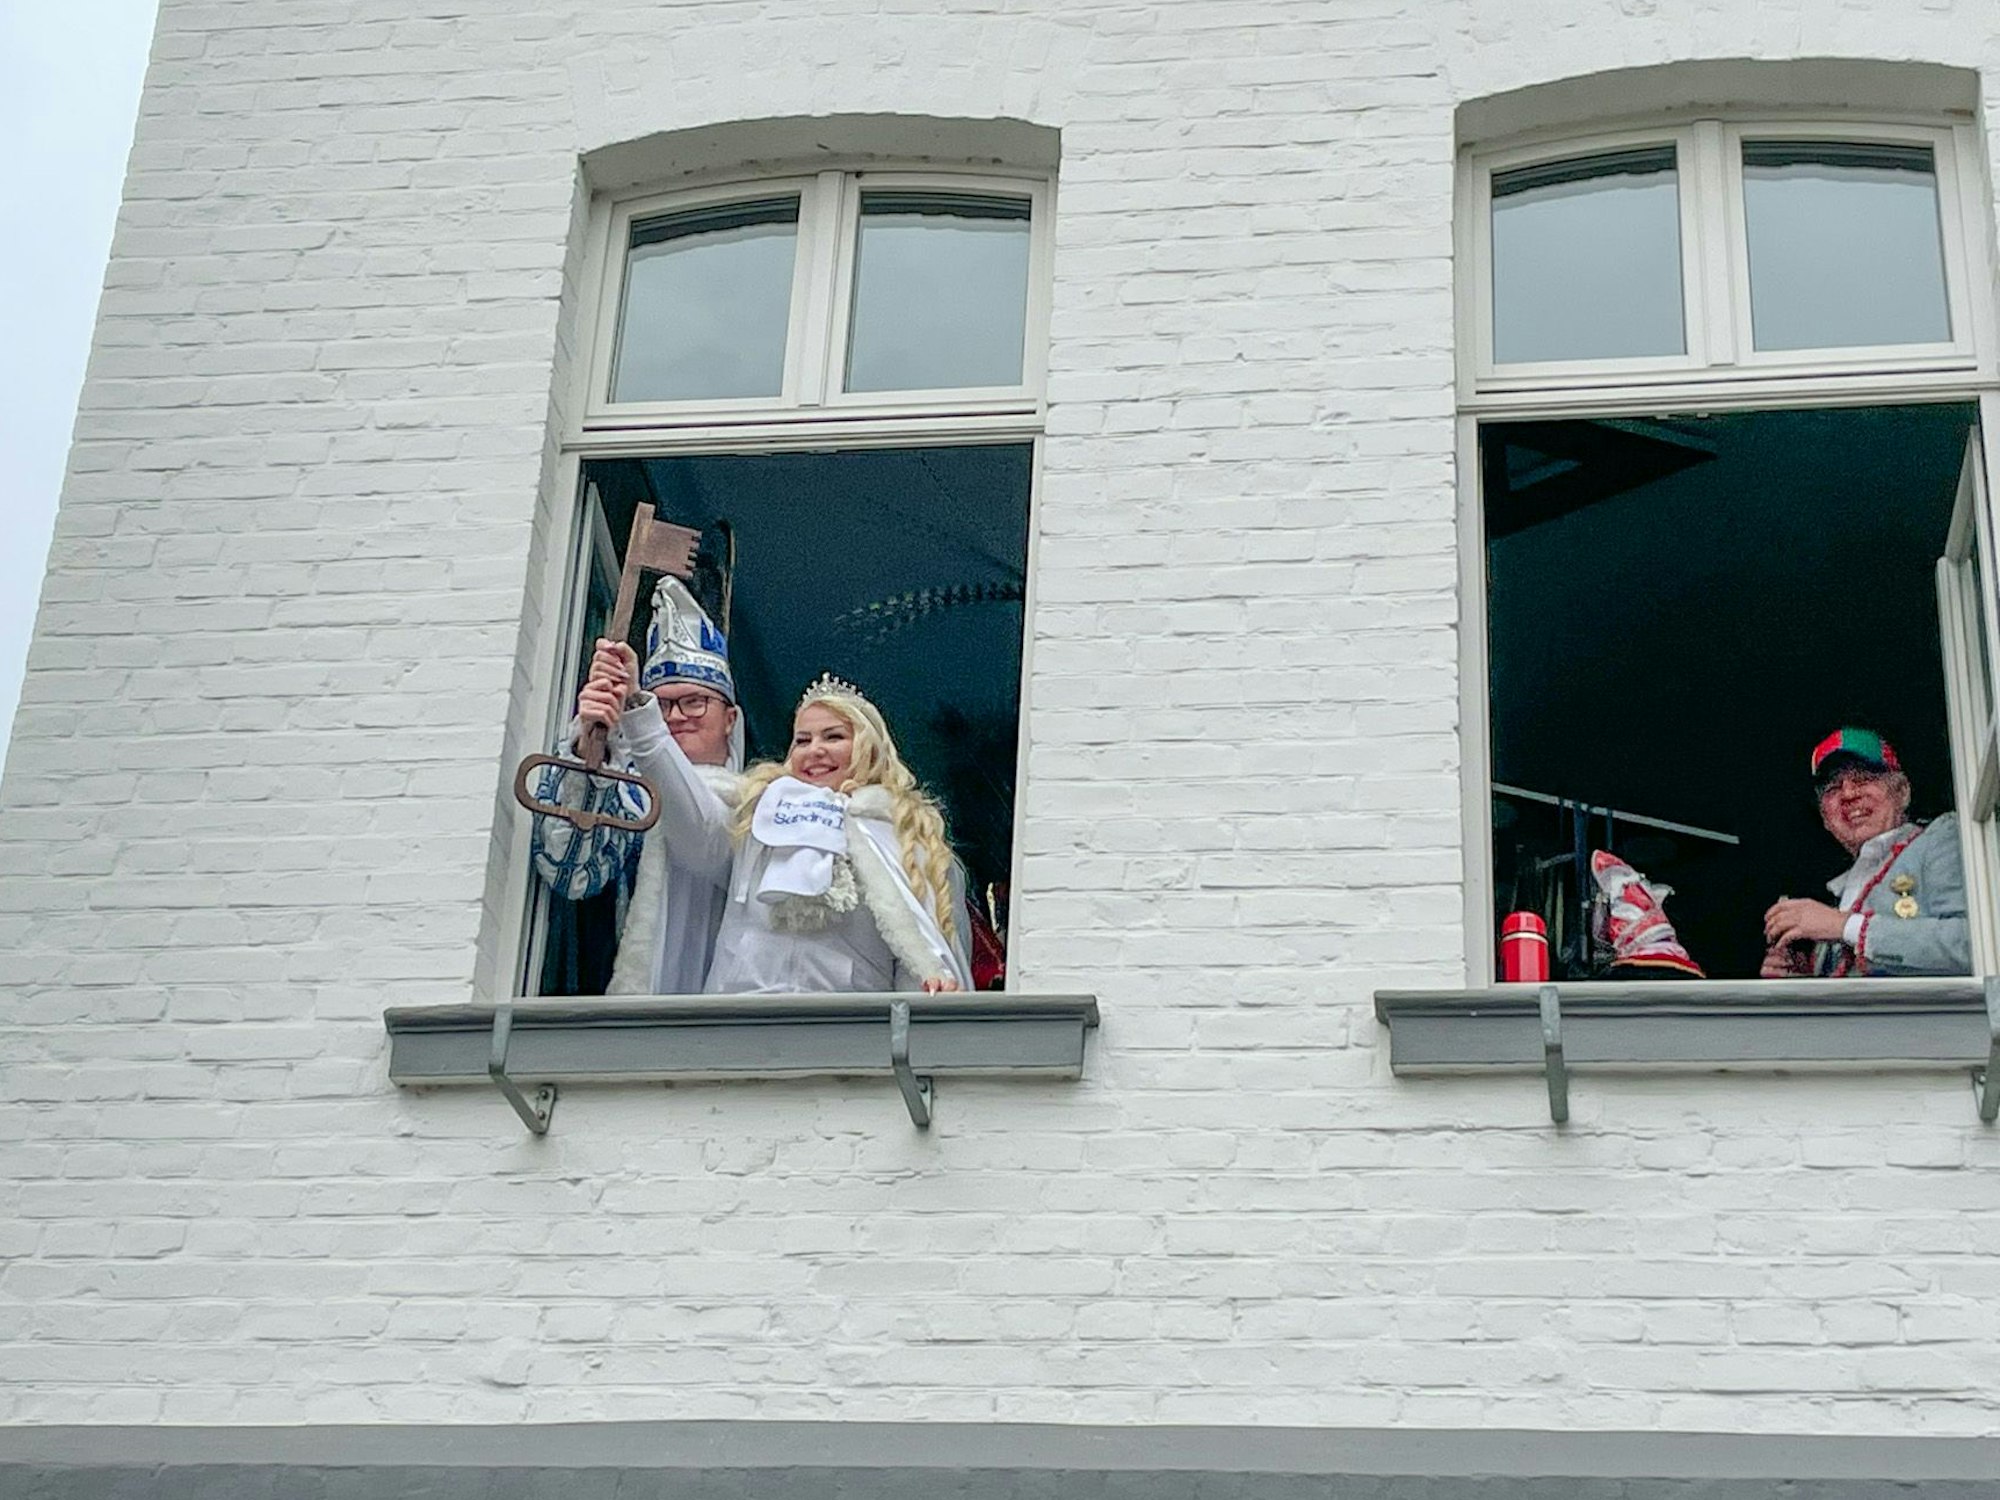 Marco I. und Sandra I. aus Blecher halten den Stadtschlüssel aus dem Rathausfenster. Bürgermeister Robert Lennerts steht an einem anderen Fenster und lächelt.